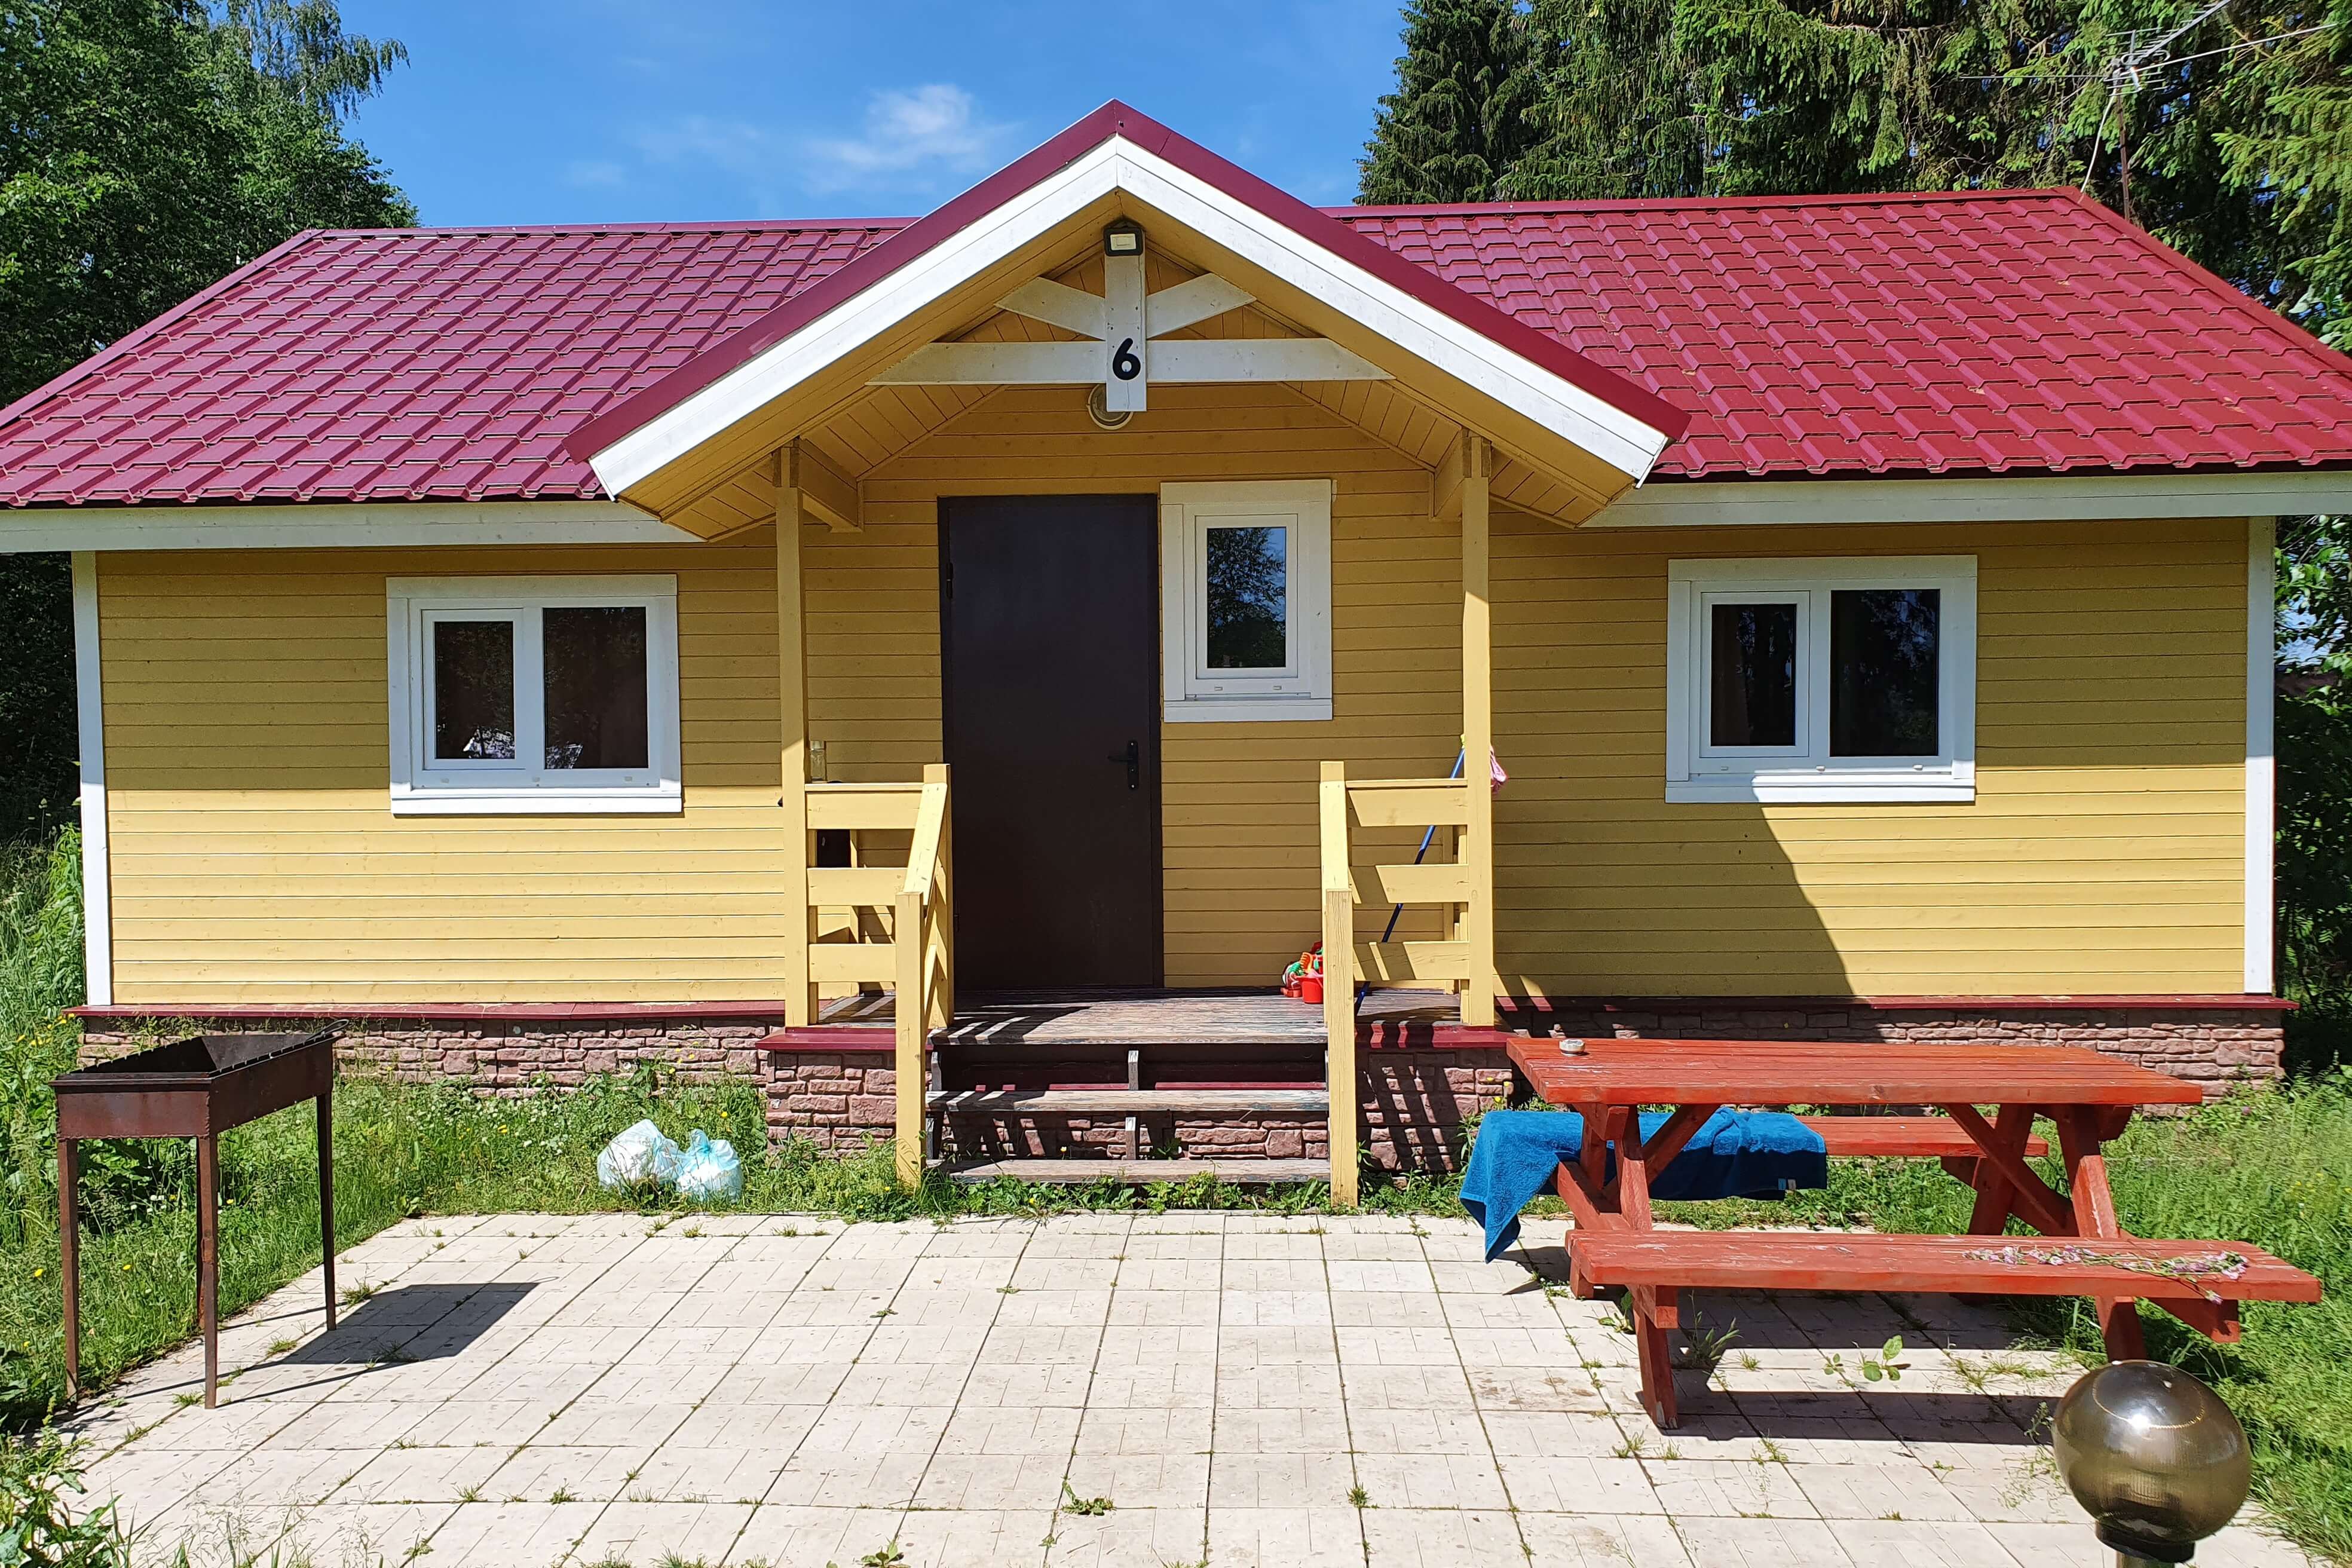 Фасад домика выкрашен в желтый цвет, перед крыльцом - мангал и столик для отдыха.